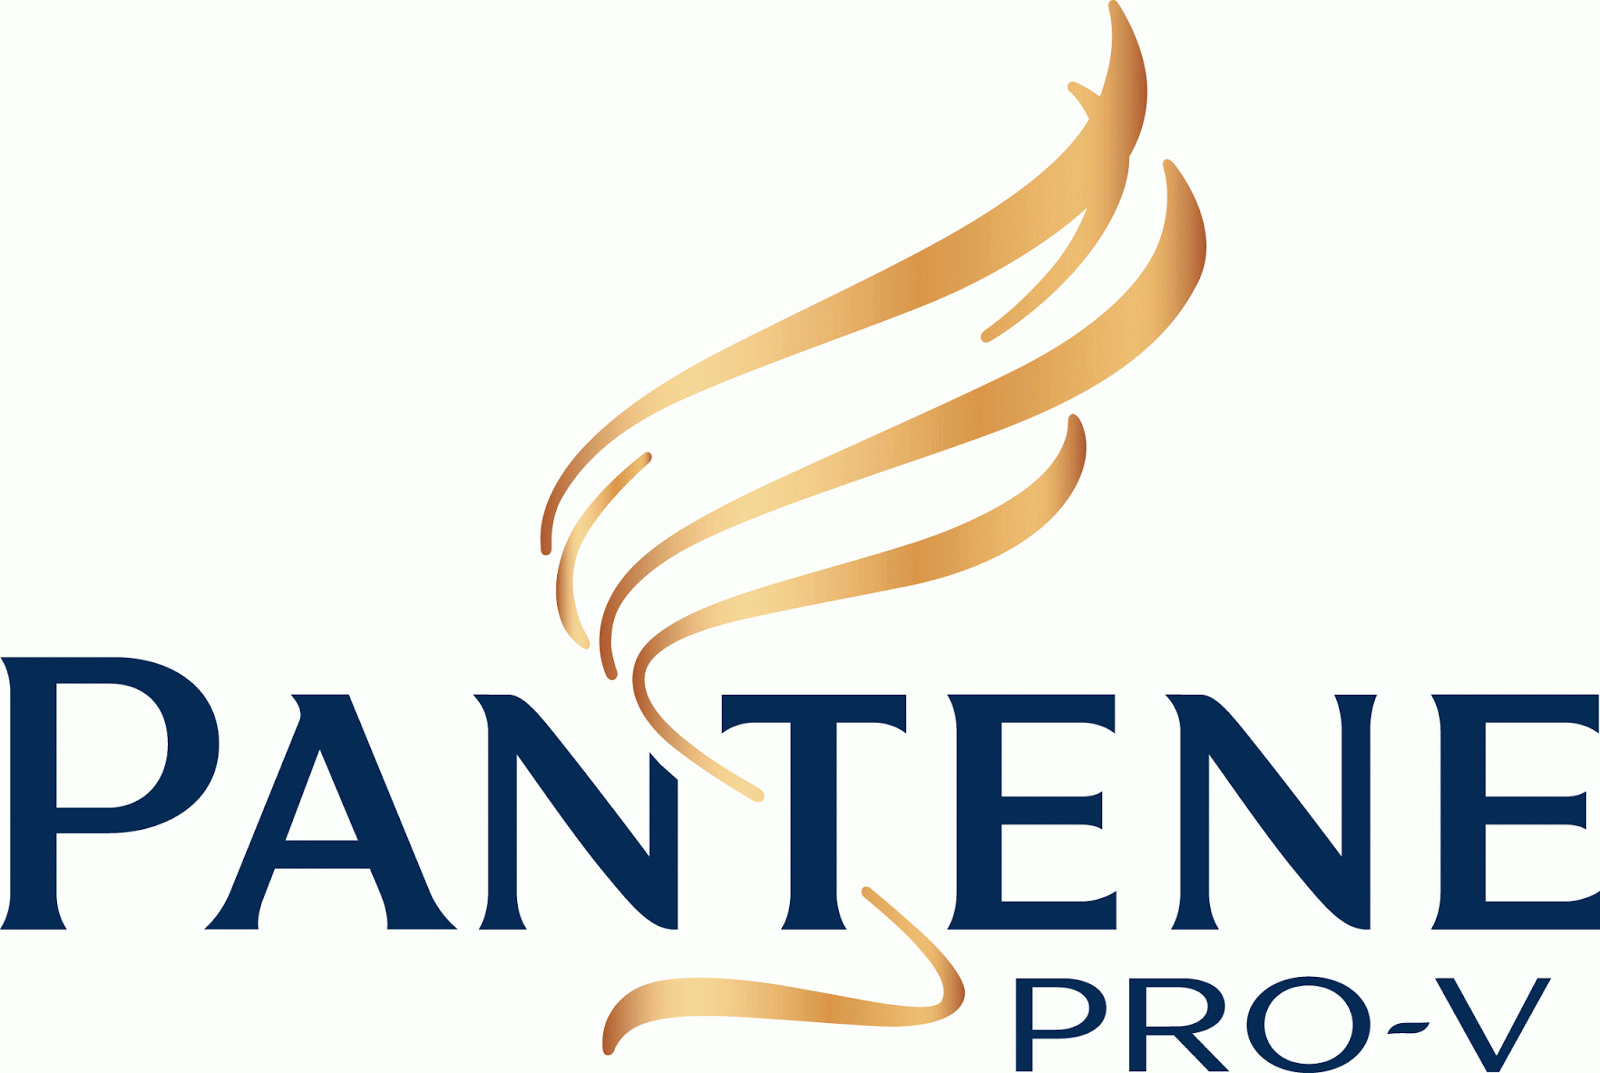 Popular Word Logo - Very Popular Logo: Pantene Logo